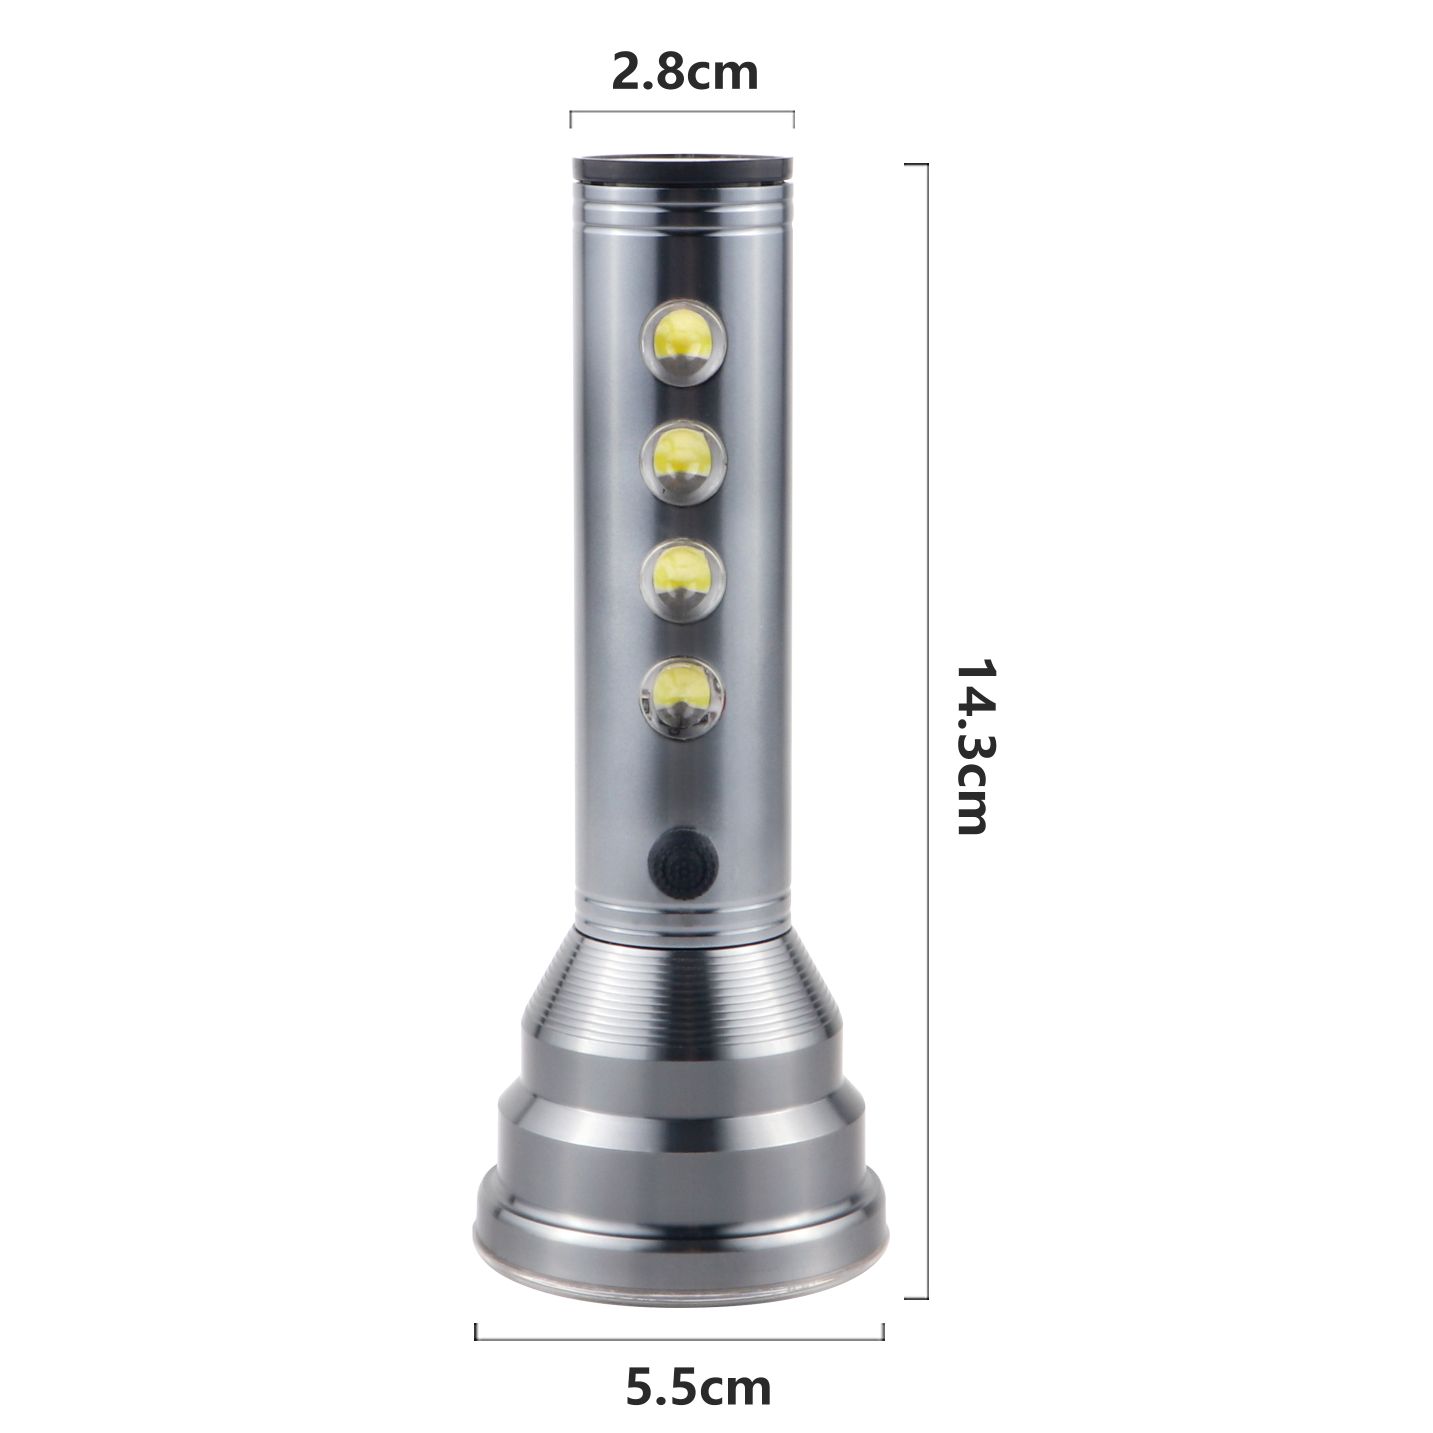 新款LED铝合金强光手电筒 户外巡逻家用便携多功能强光照明手电筒XJ-014详情图3